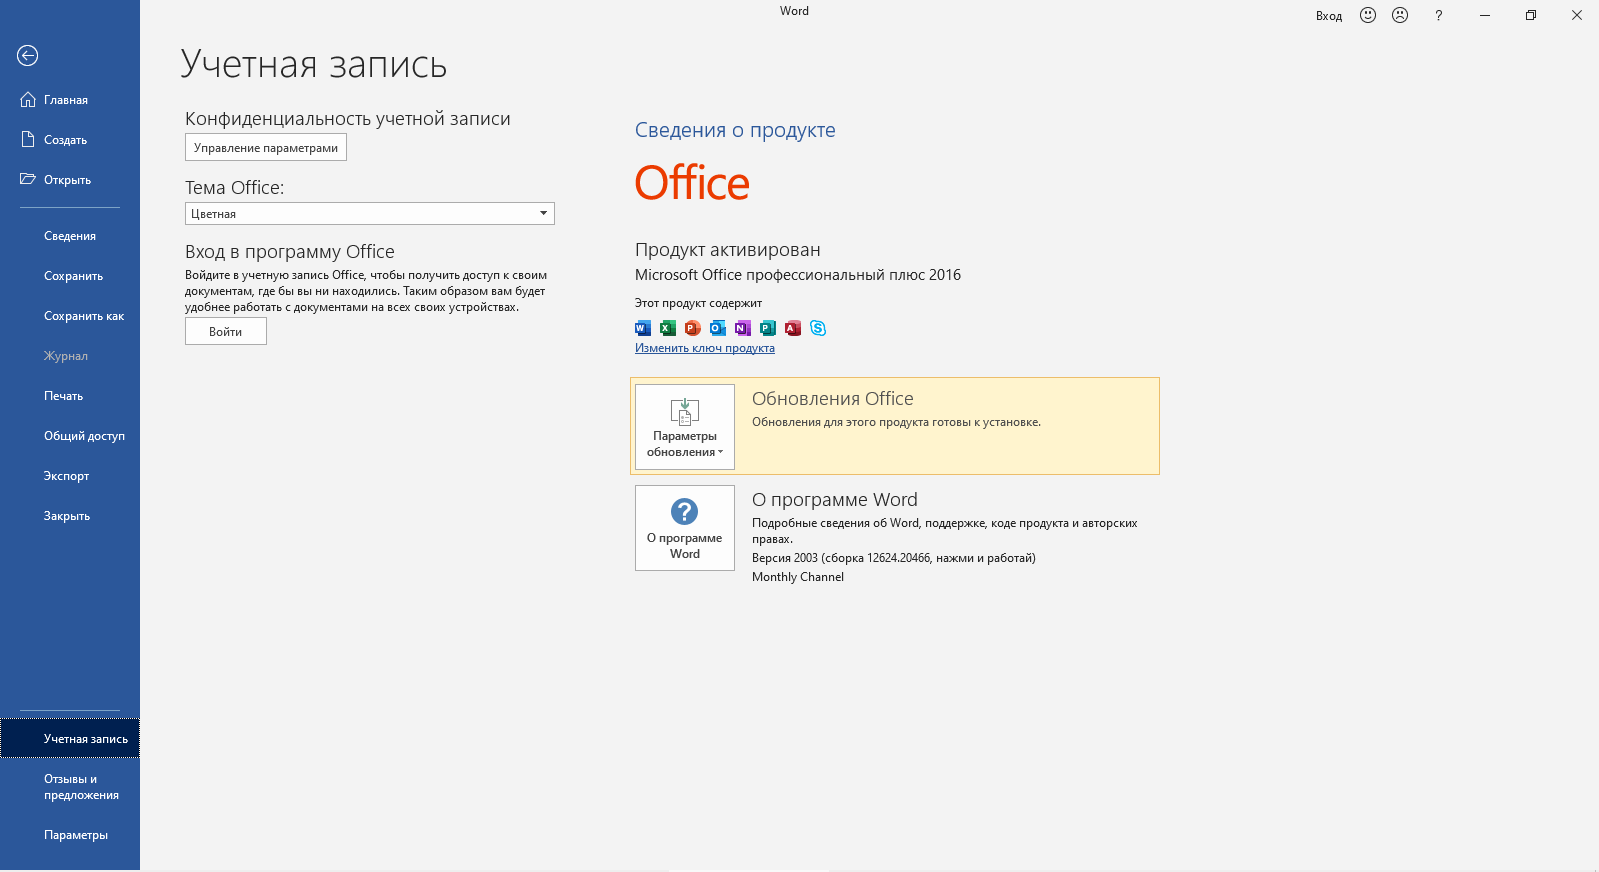 Так это выглядит в Microsoft Office 2016